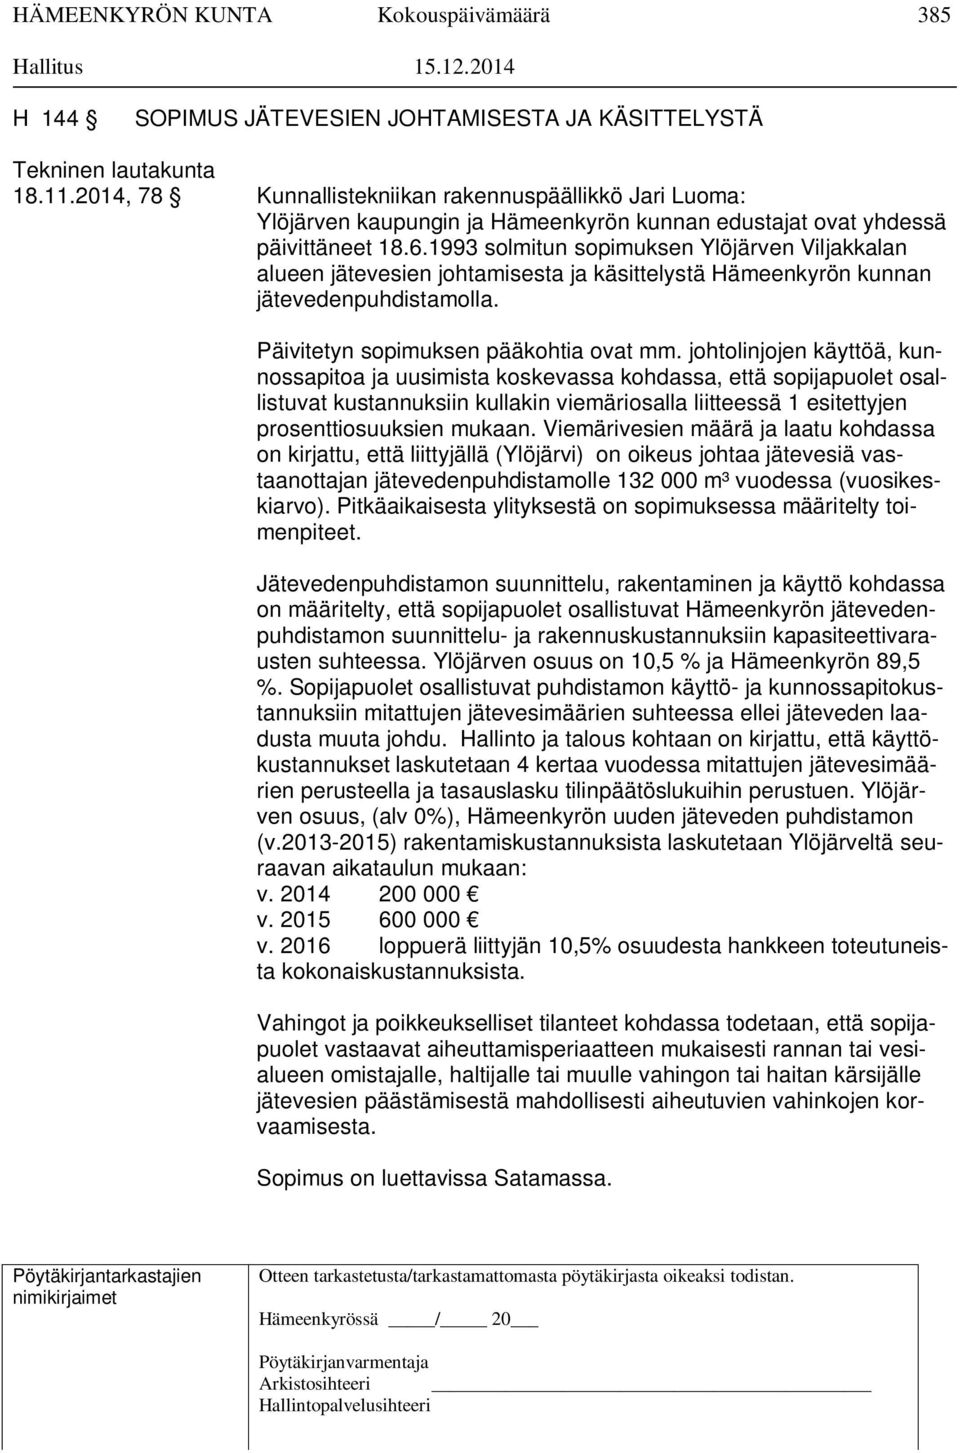 1993 solmitun sopimuksen Ylöjärven Viljakkalan alueen jätevesien johtamisesta ja käsittelystä Hämeenkyrön kunnan jätevedenpuhdistamolla. Päivitetyn sopimuksen pääkohtia ovat mm.